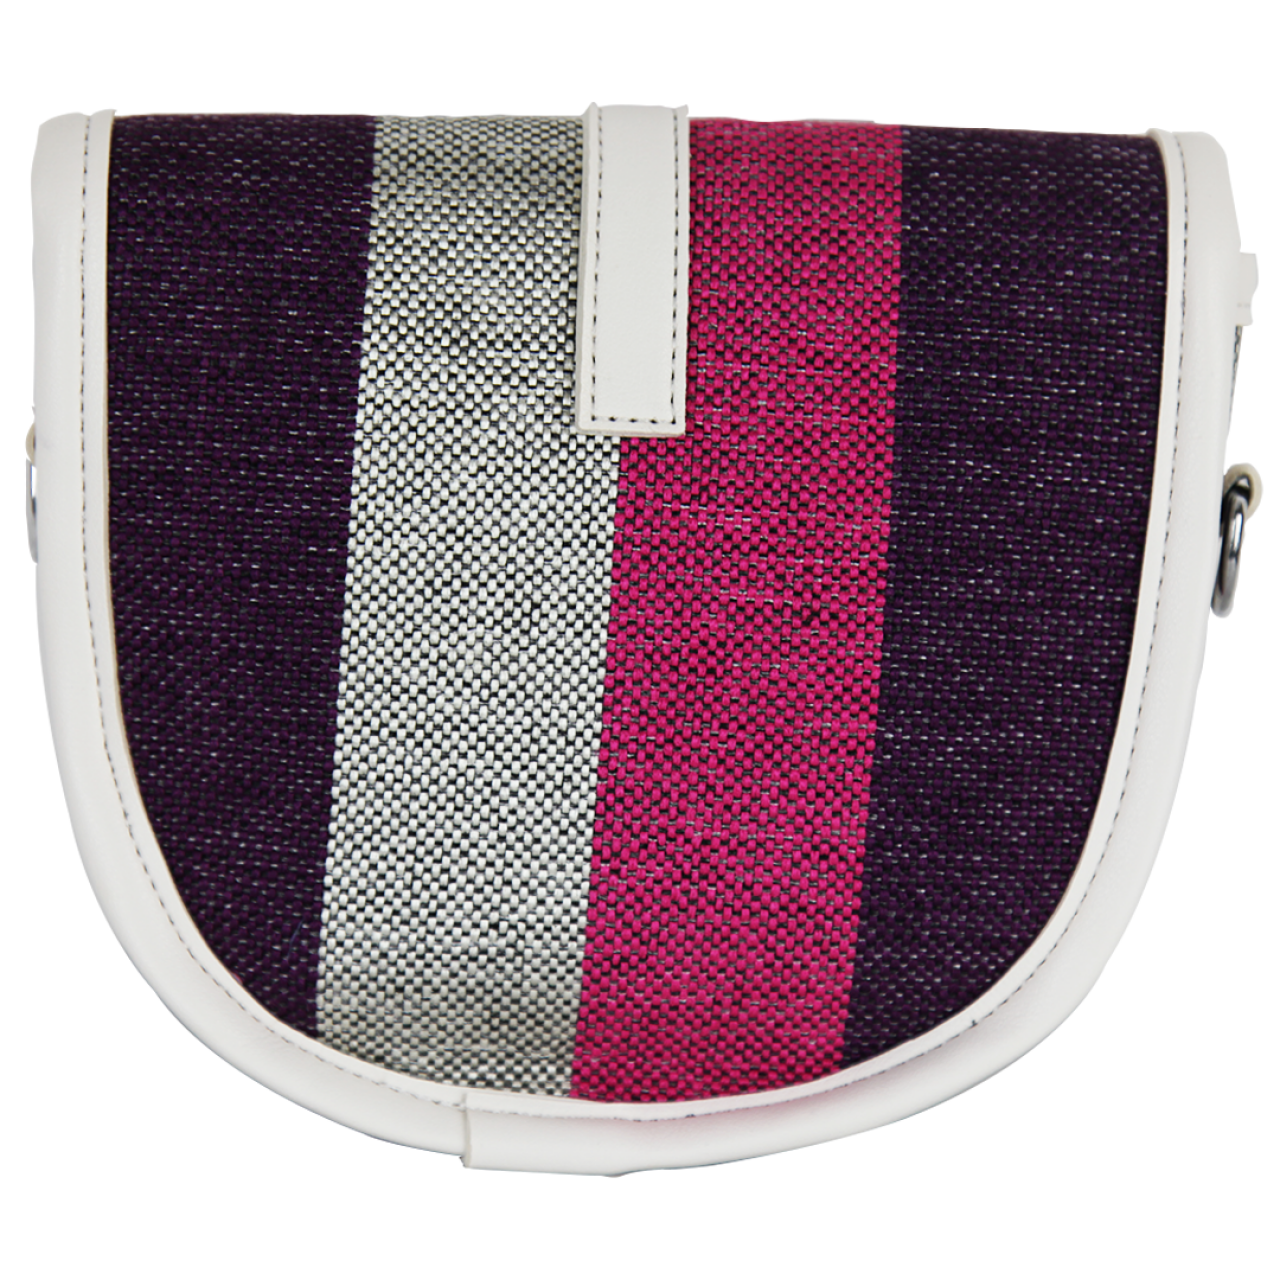 Women's Front Flap Belt Closure Sling Satchel Striped Multi Color Crossbody Bag With White Adjustable Shoulder Straps